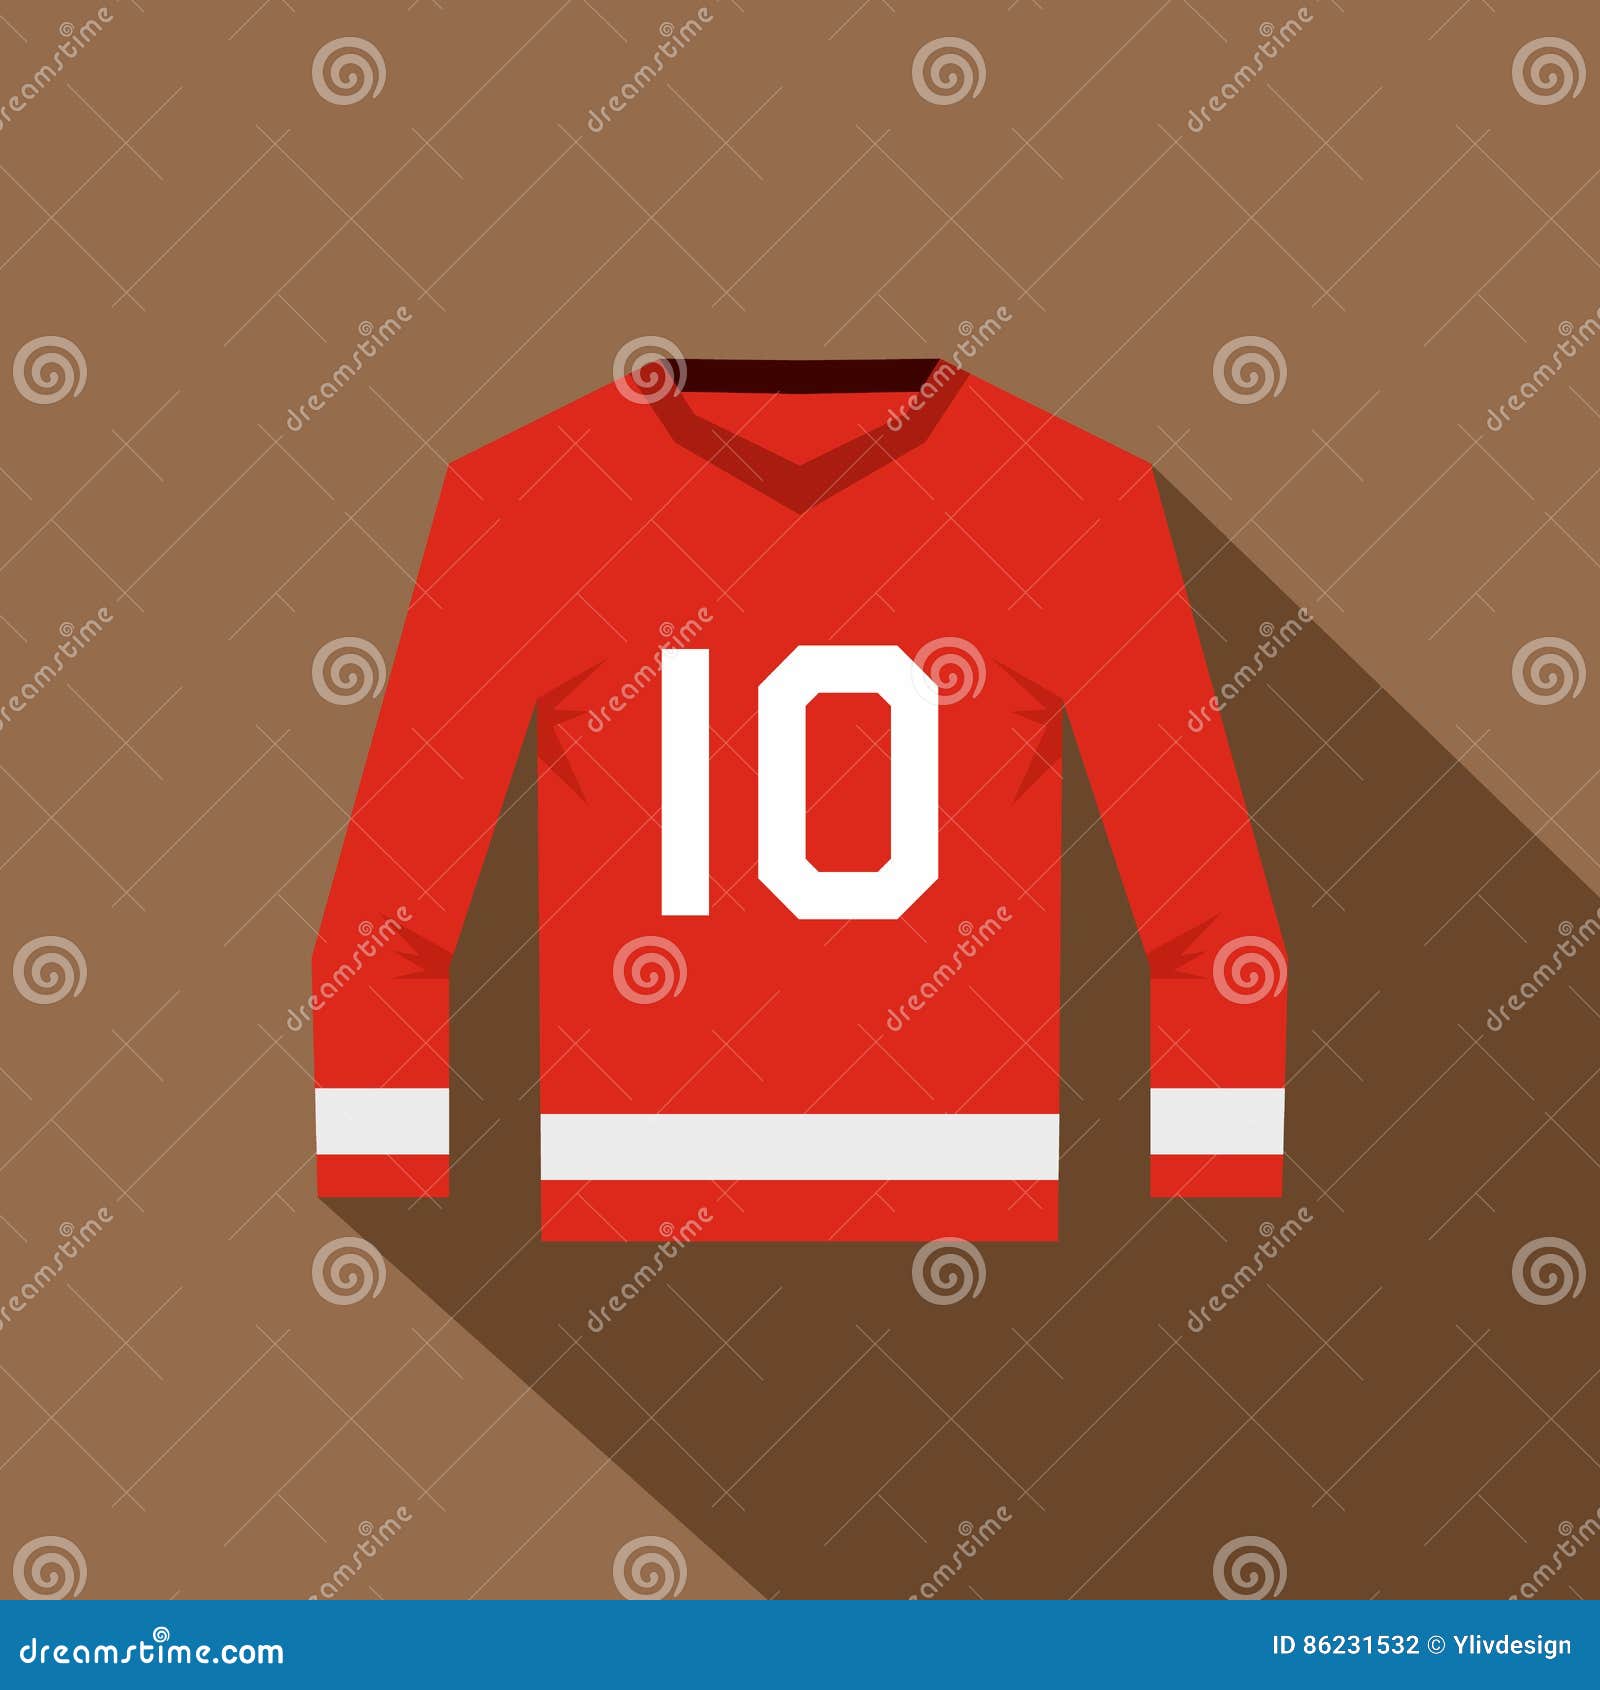 Hockey Jersey Stock Illustrations – 2,982 Hockey Jersey Stock